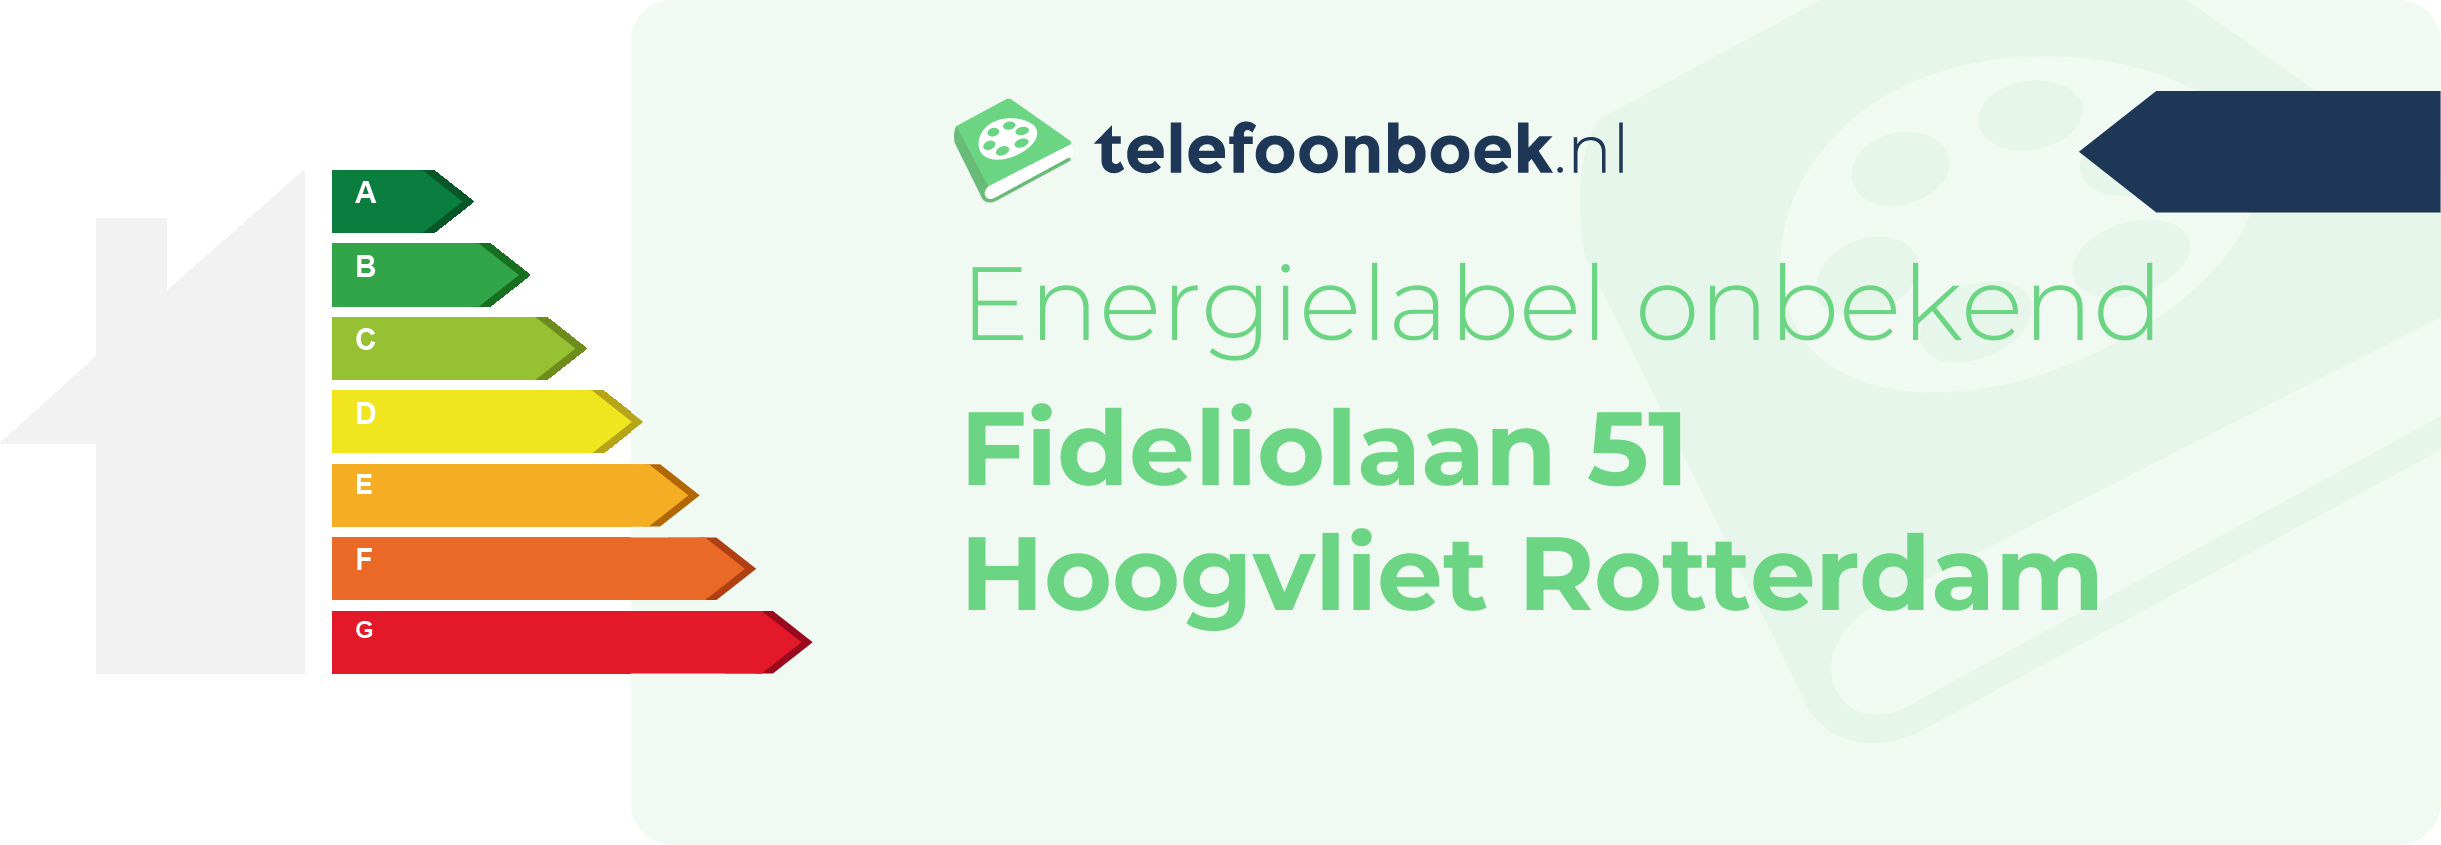 Energielabel Fideliolaan 51 Hoogvliet Rotterdam